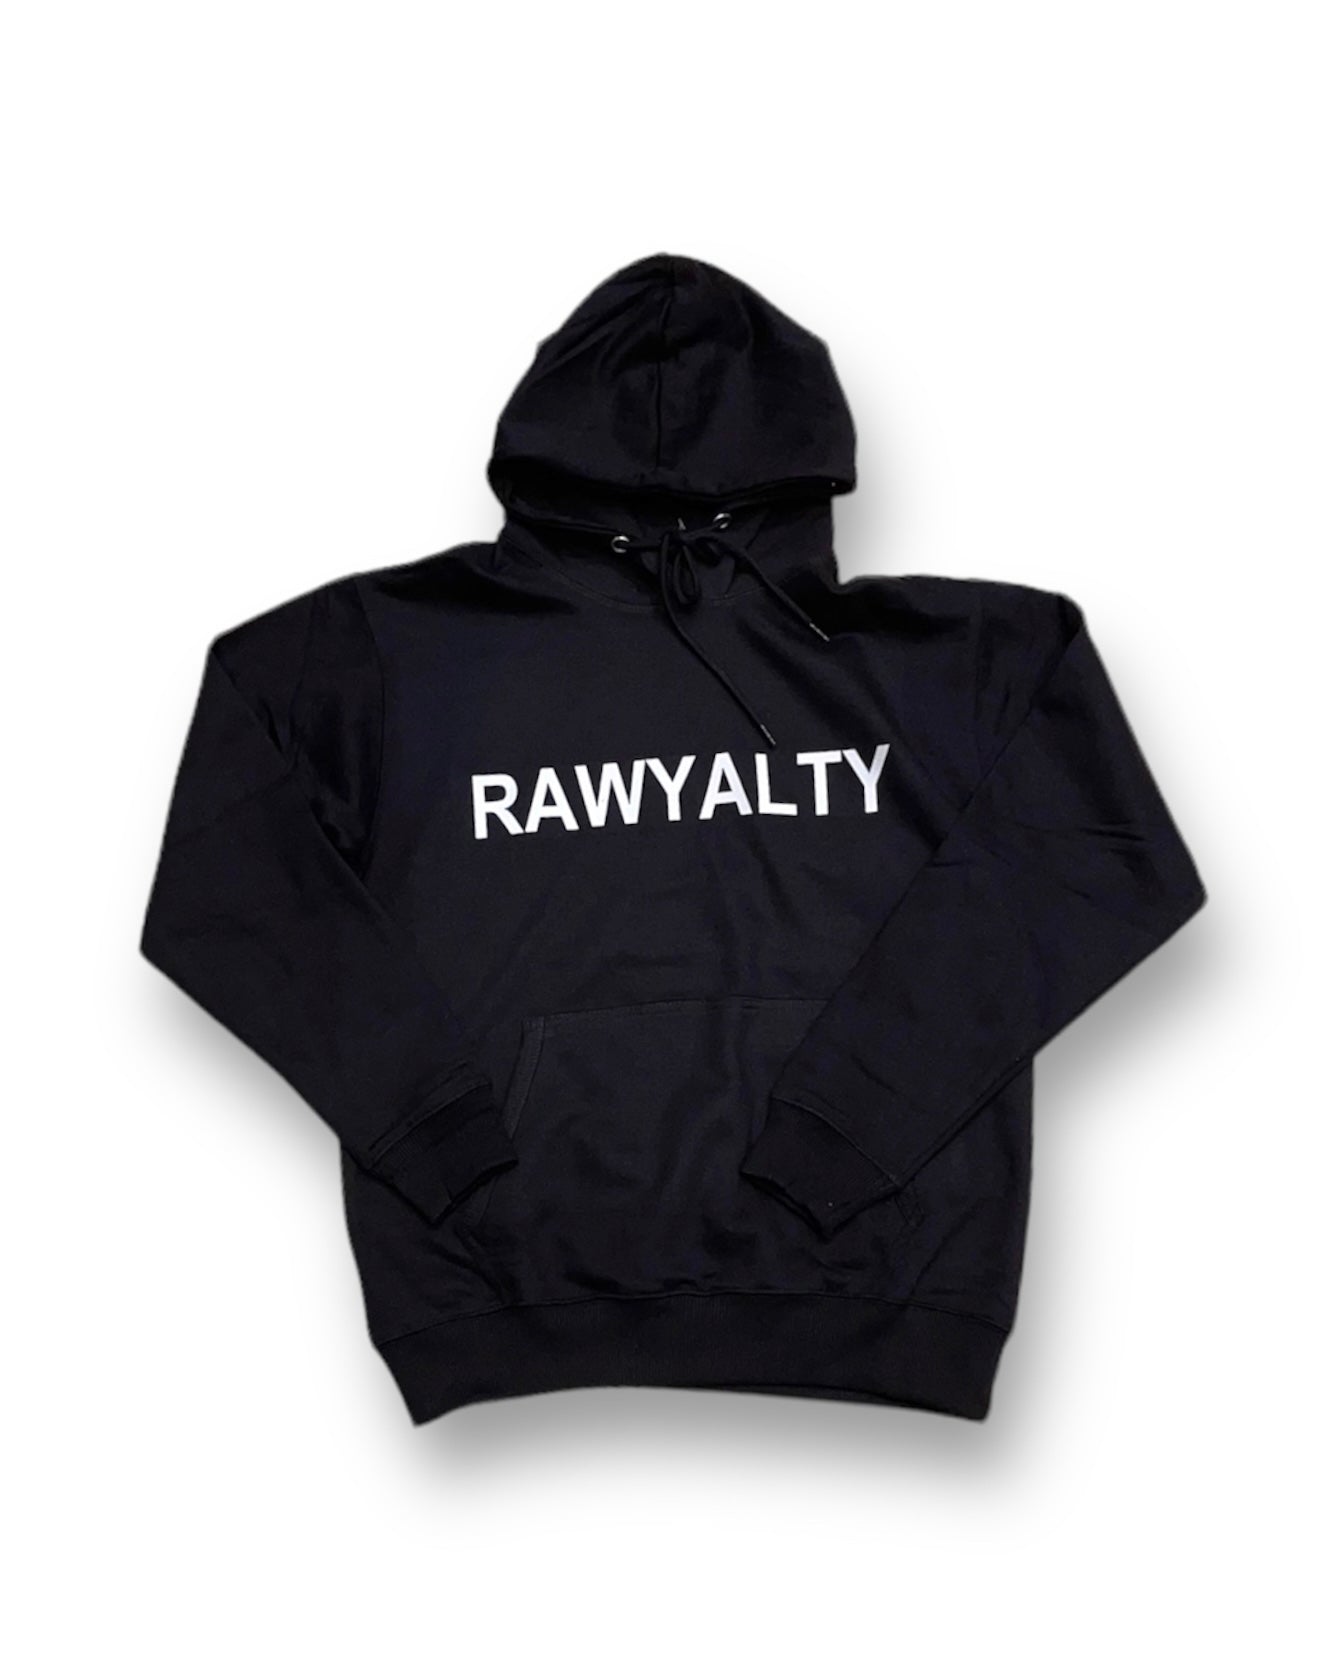 Rawyalty Print Hoodie